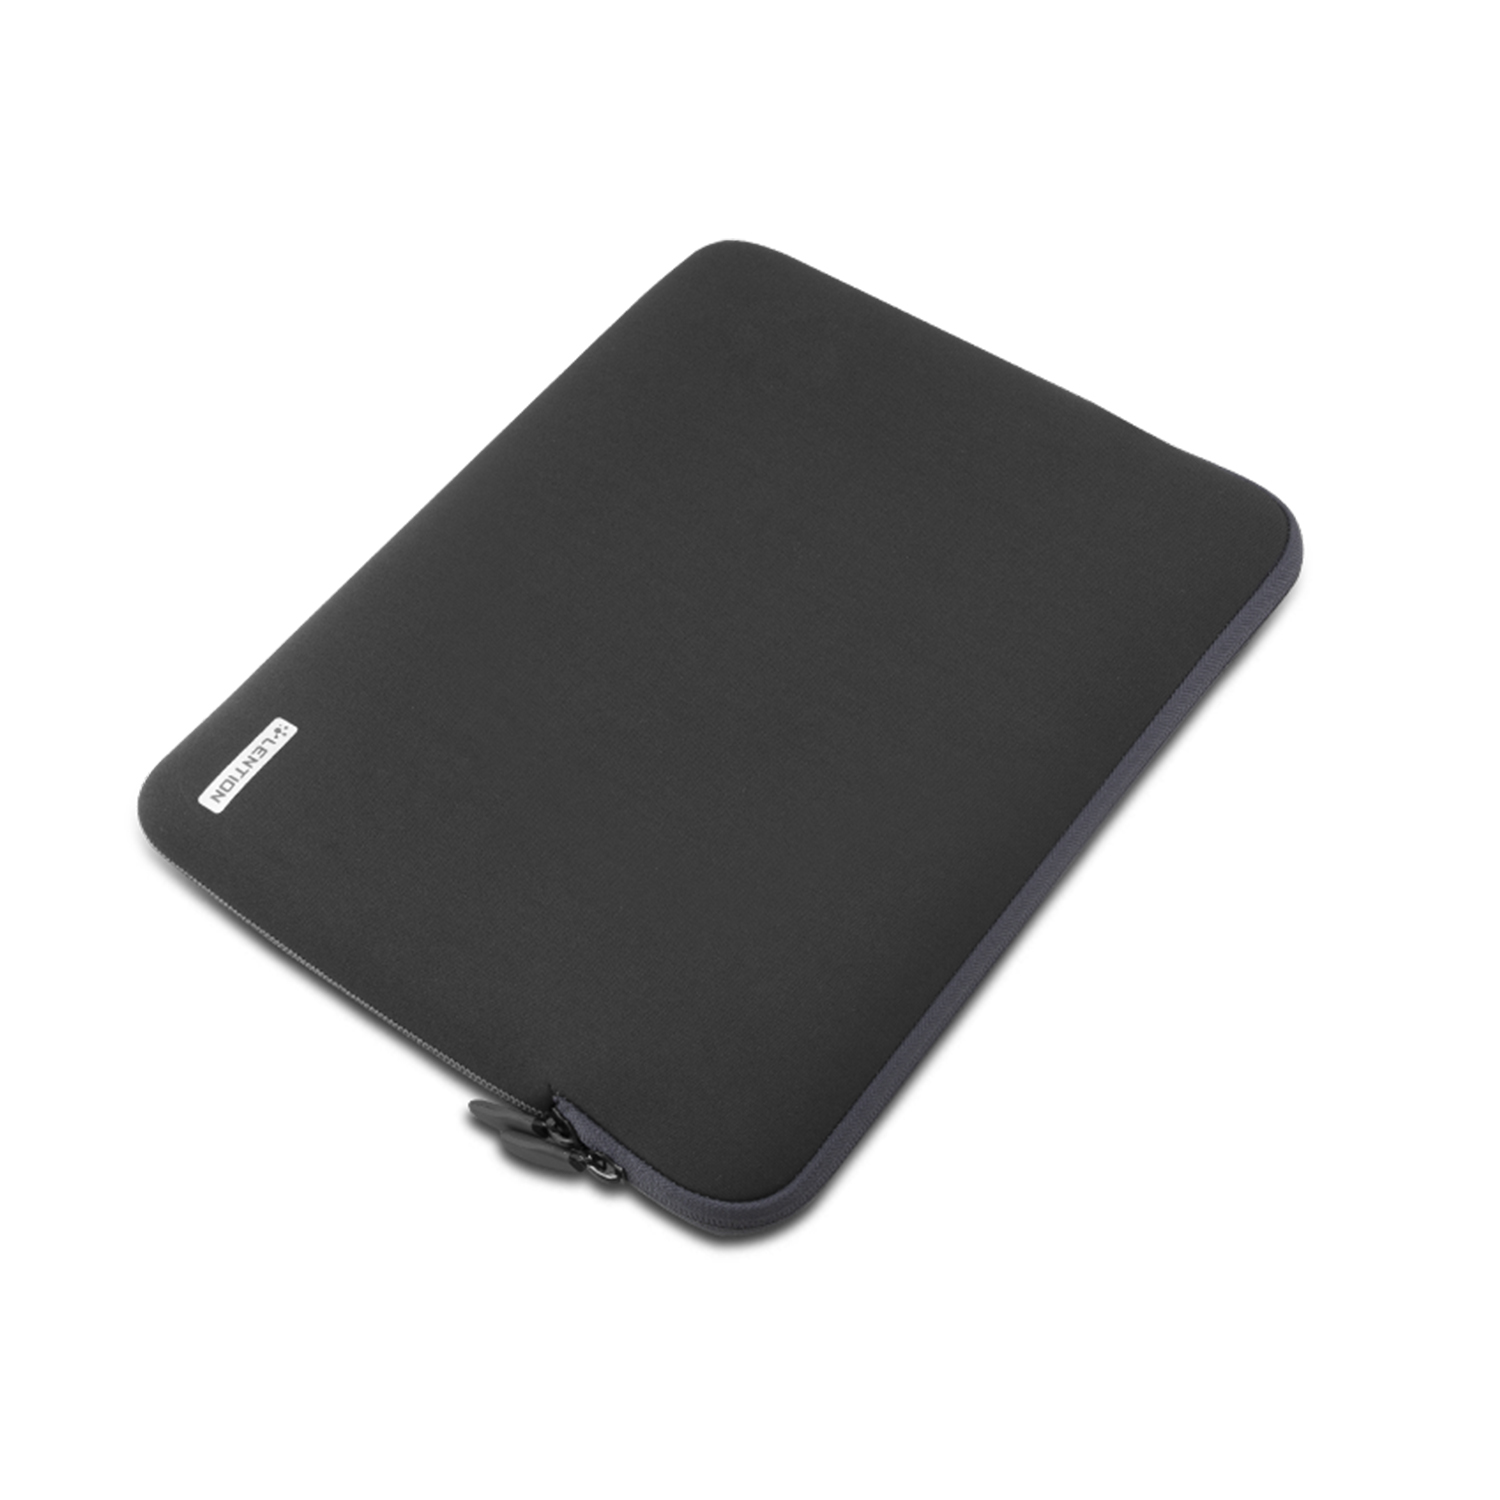  کاور لپ تاپ لنشن مدل PCB-B390 مناسب برای لپ تاپ 13 اینچی 